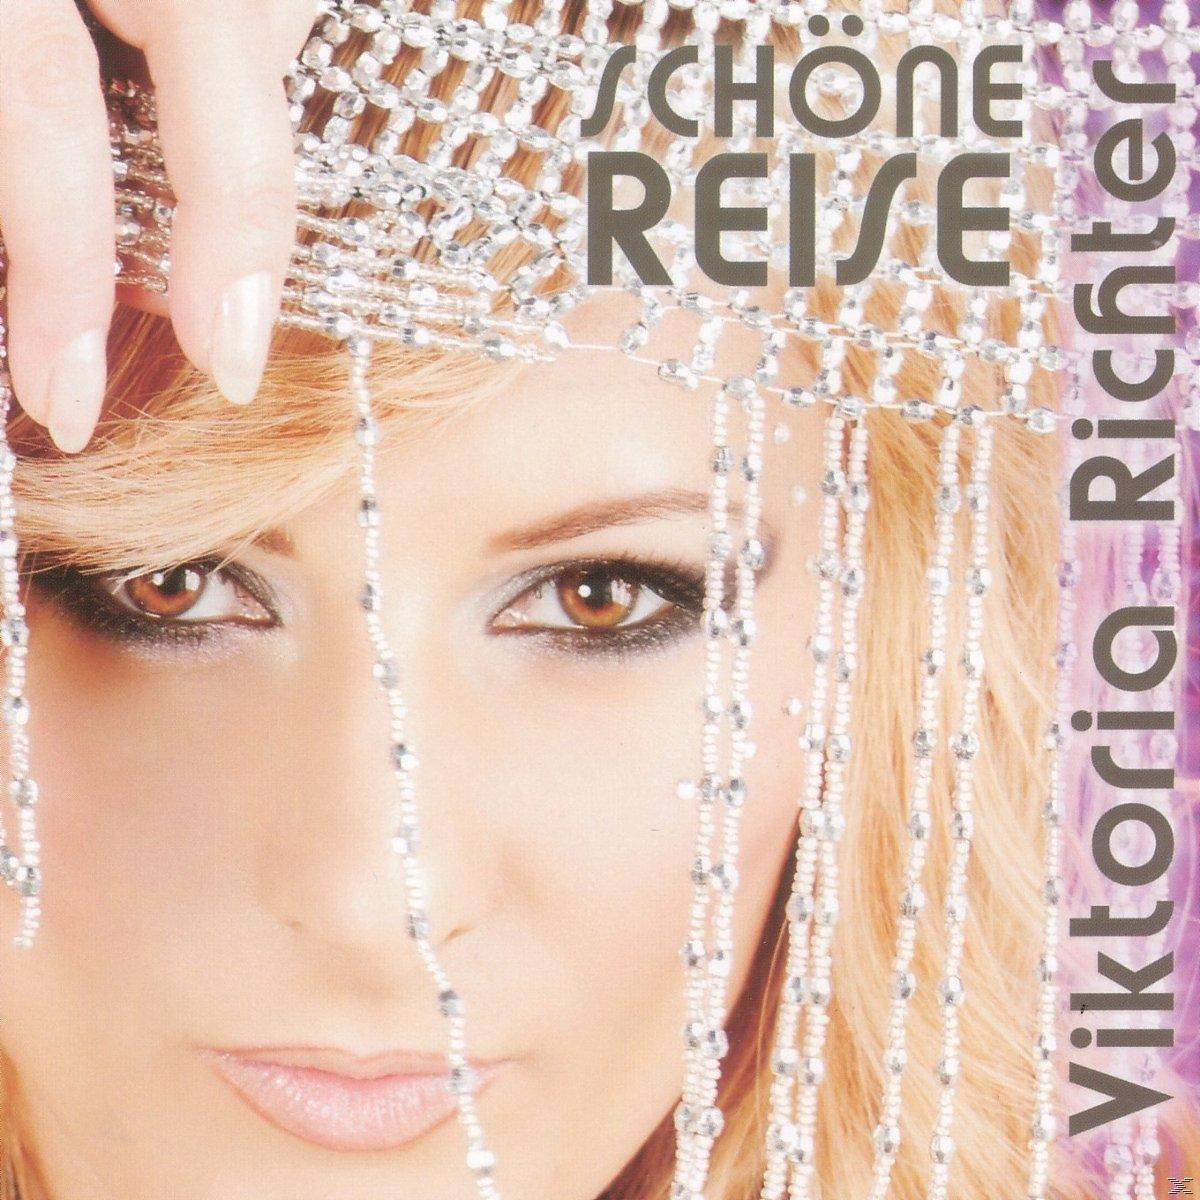 - Richter Reise Schöne (CD) Viktoria -